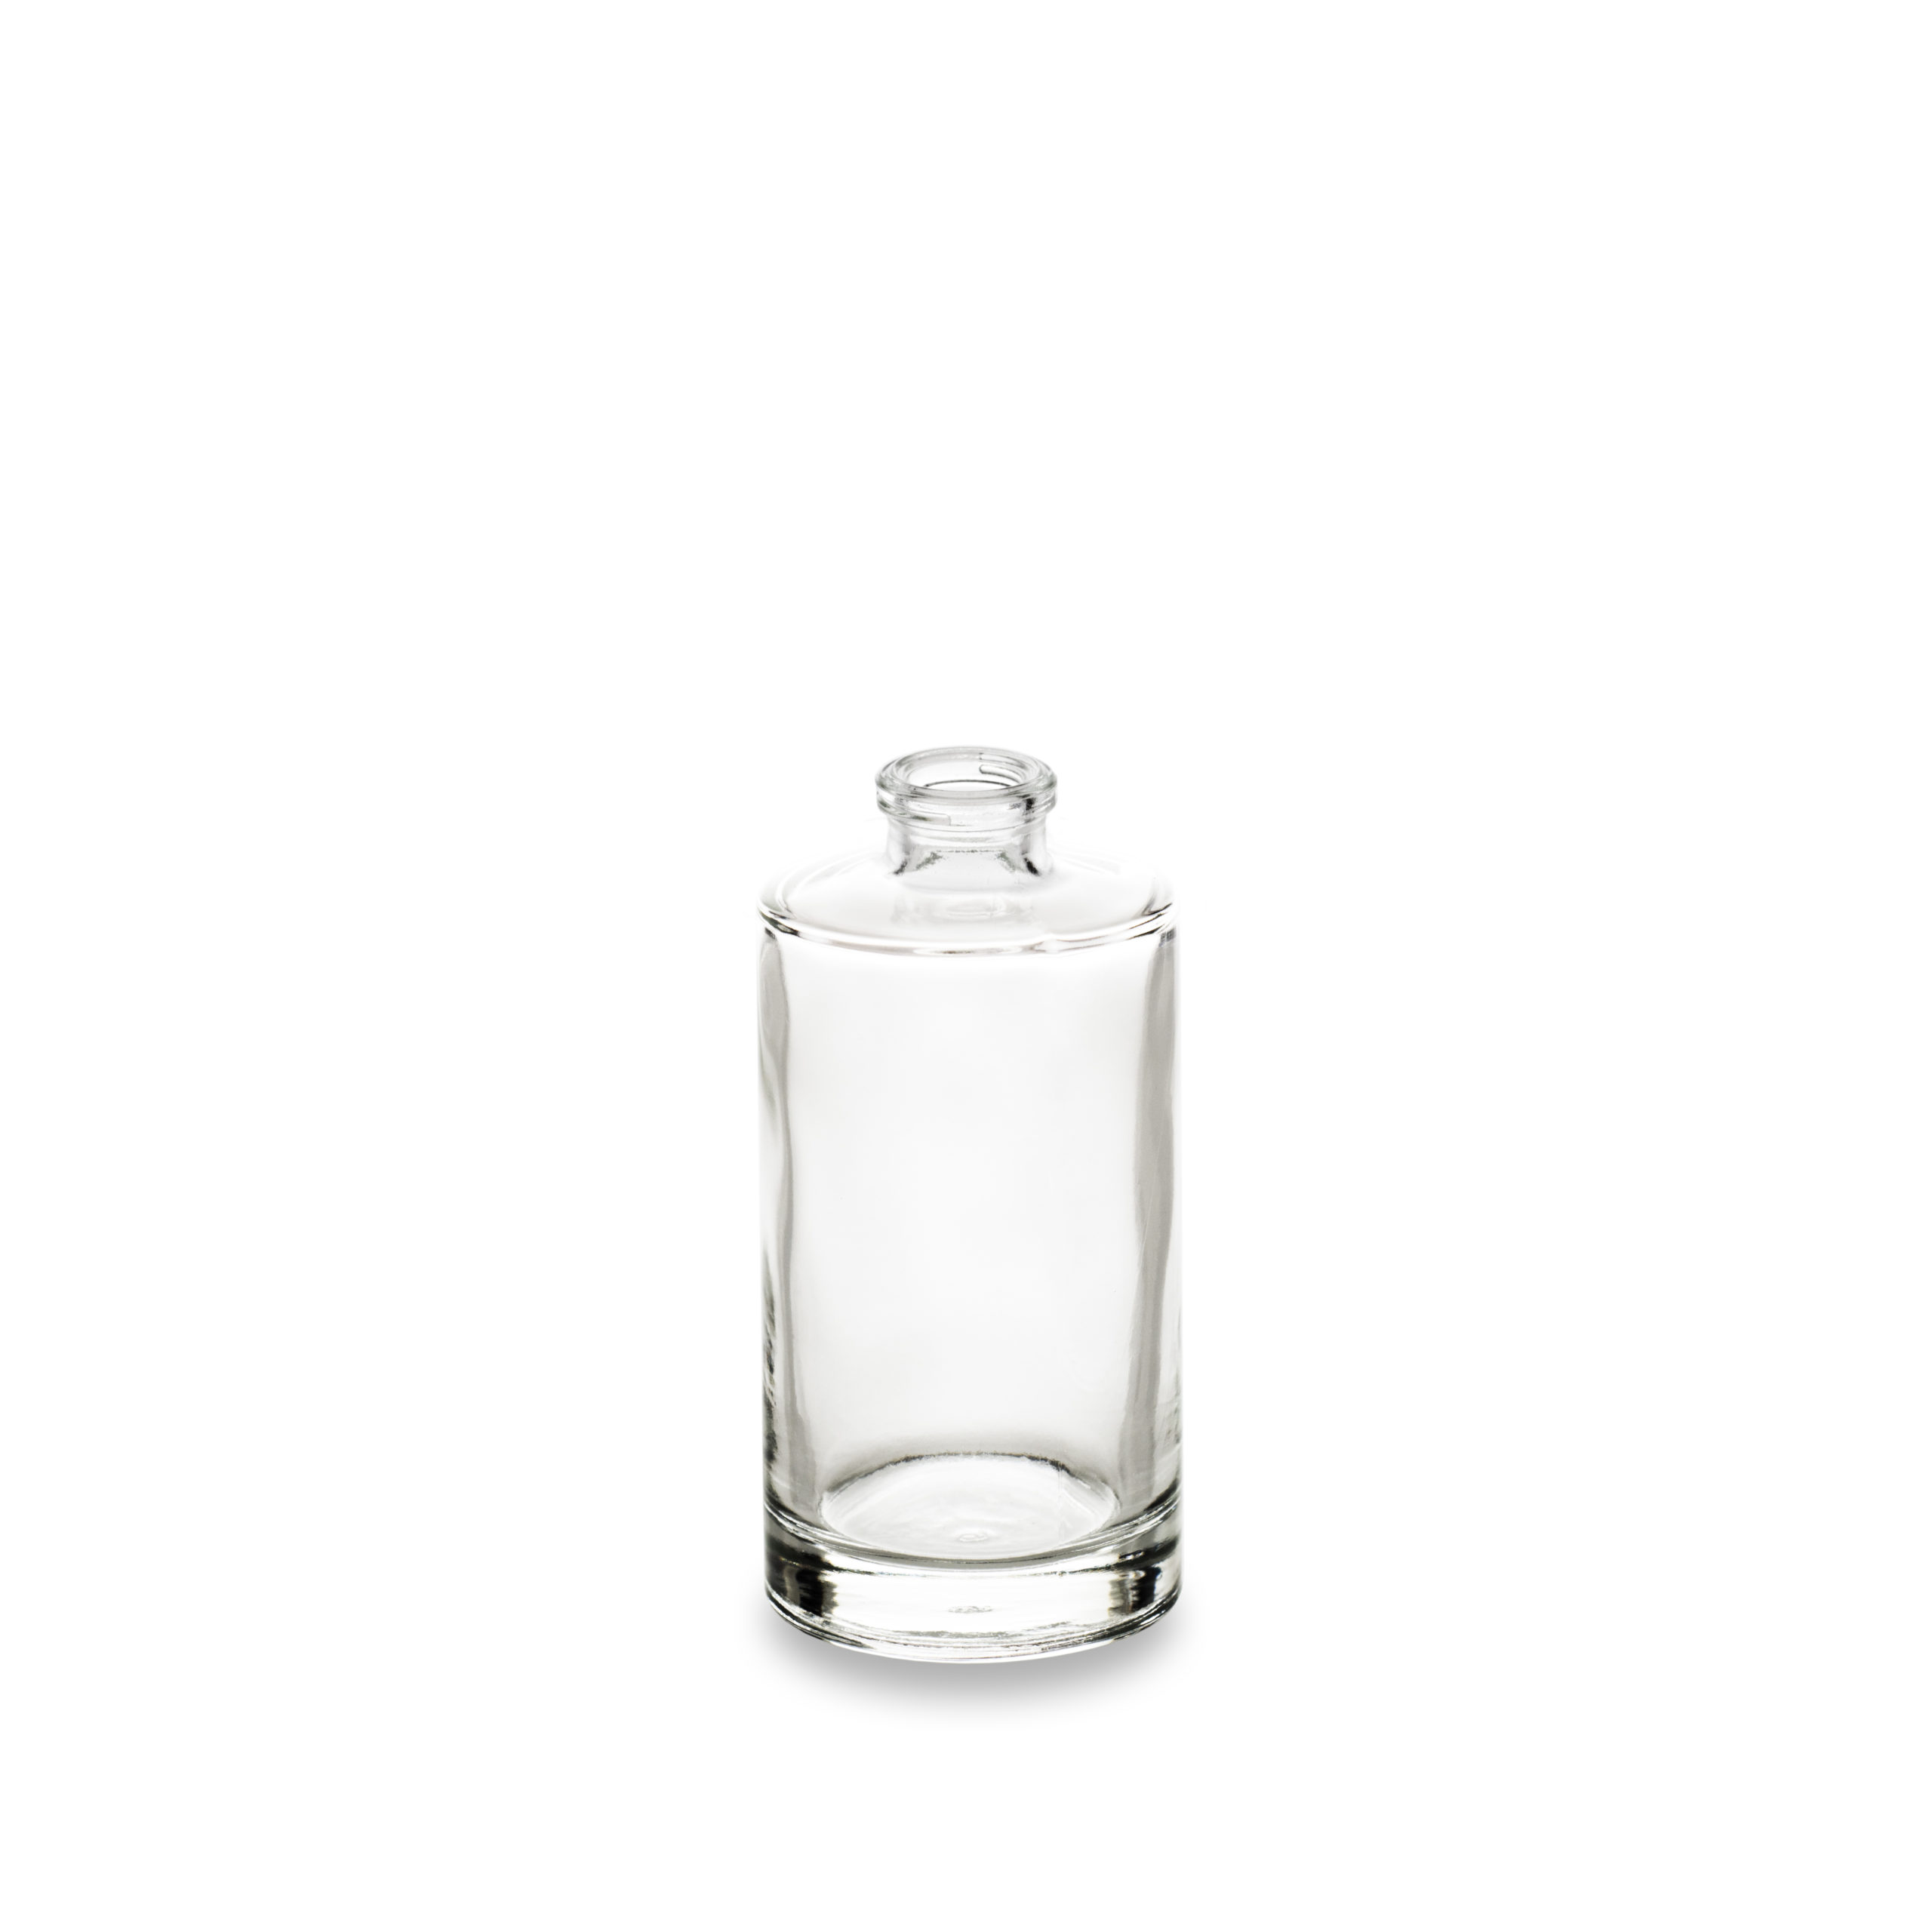 Le flacon parfumerie en verre 50 ml Orion est un produit propsé par le fabricant de packagings Embalforme